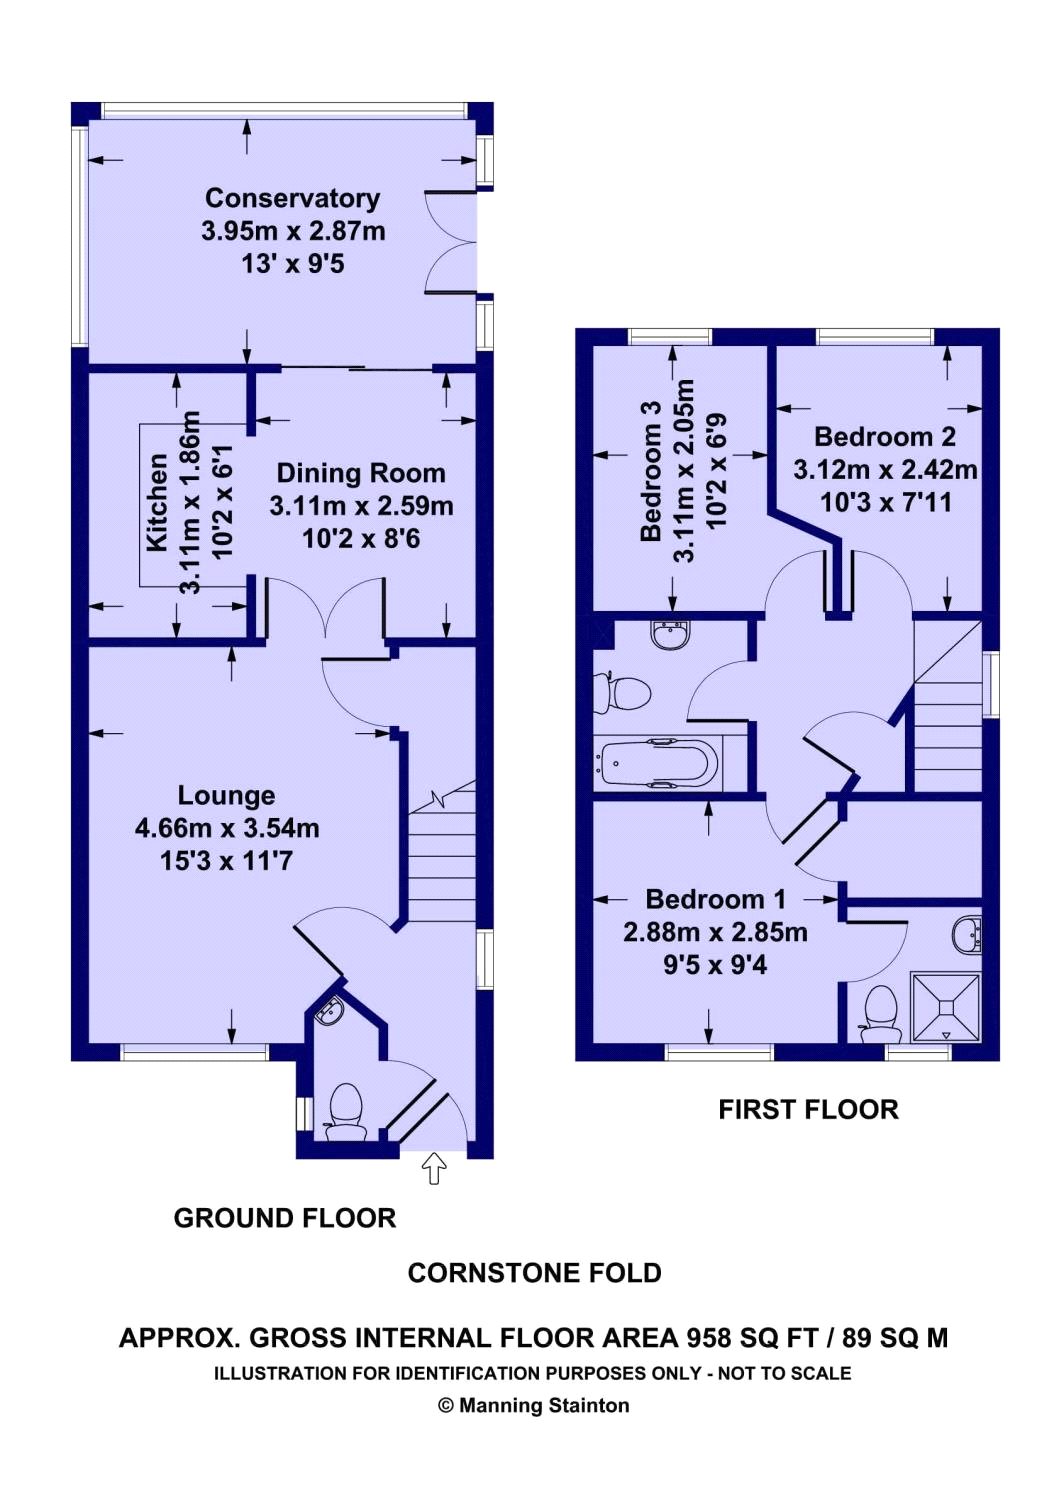 3 Bedrooms Semi-detached house to rent in Cornstone Fold, Farnley, Leeds LS12